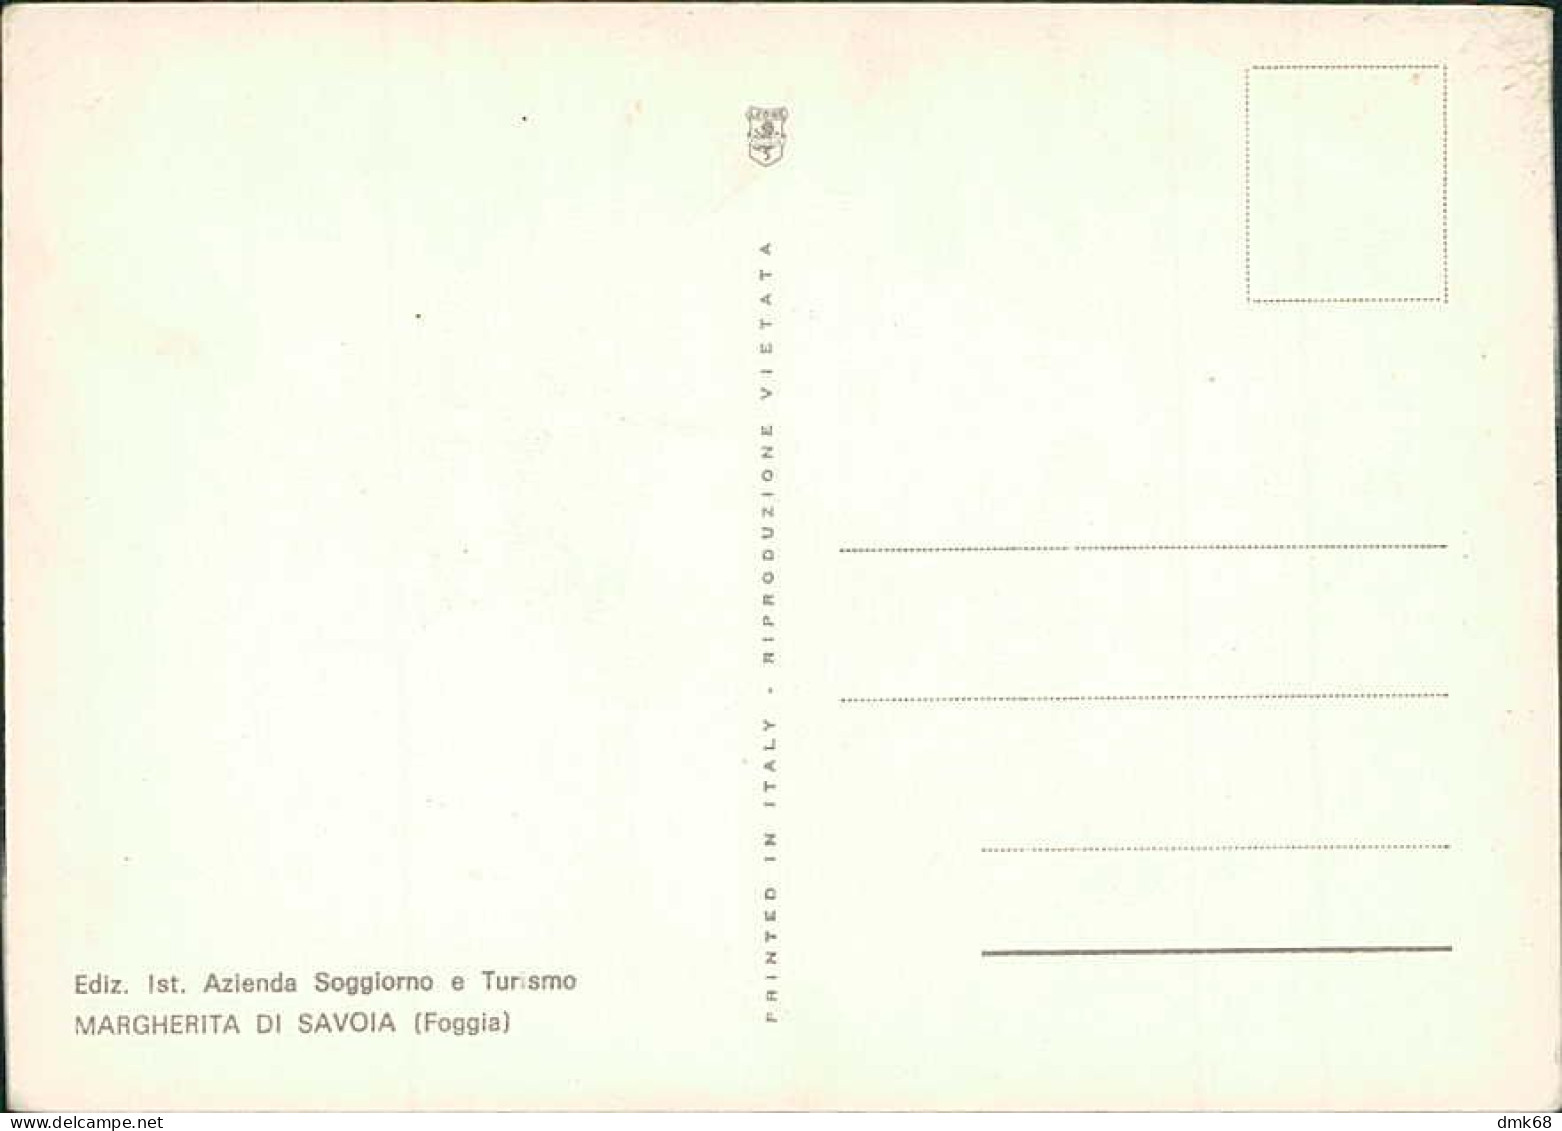 SANTA MARGHERITA DI SAVOIA ( BARLETTA ) SALUTI / VEDUTINE - EDIZ. IST. AZIENDA DI SOGGIORNO E TURISMO - 1970s  (19009) - Barletta